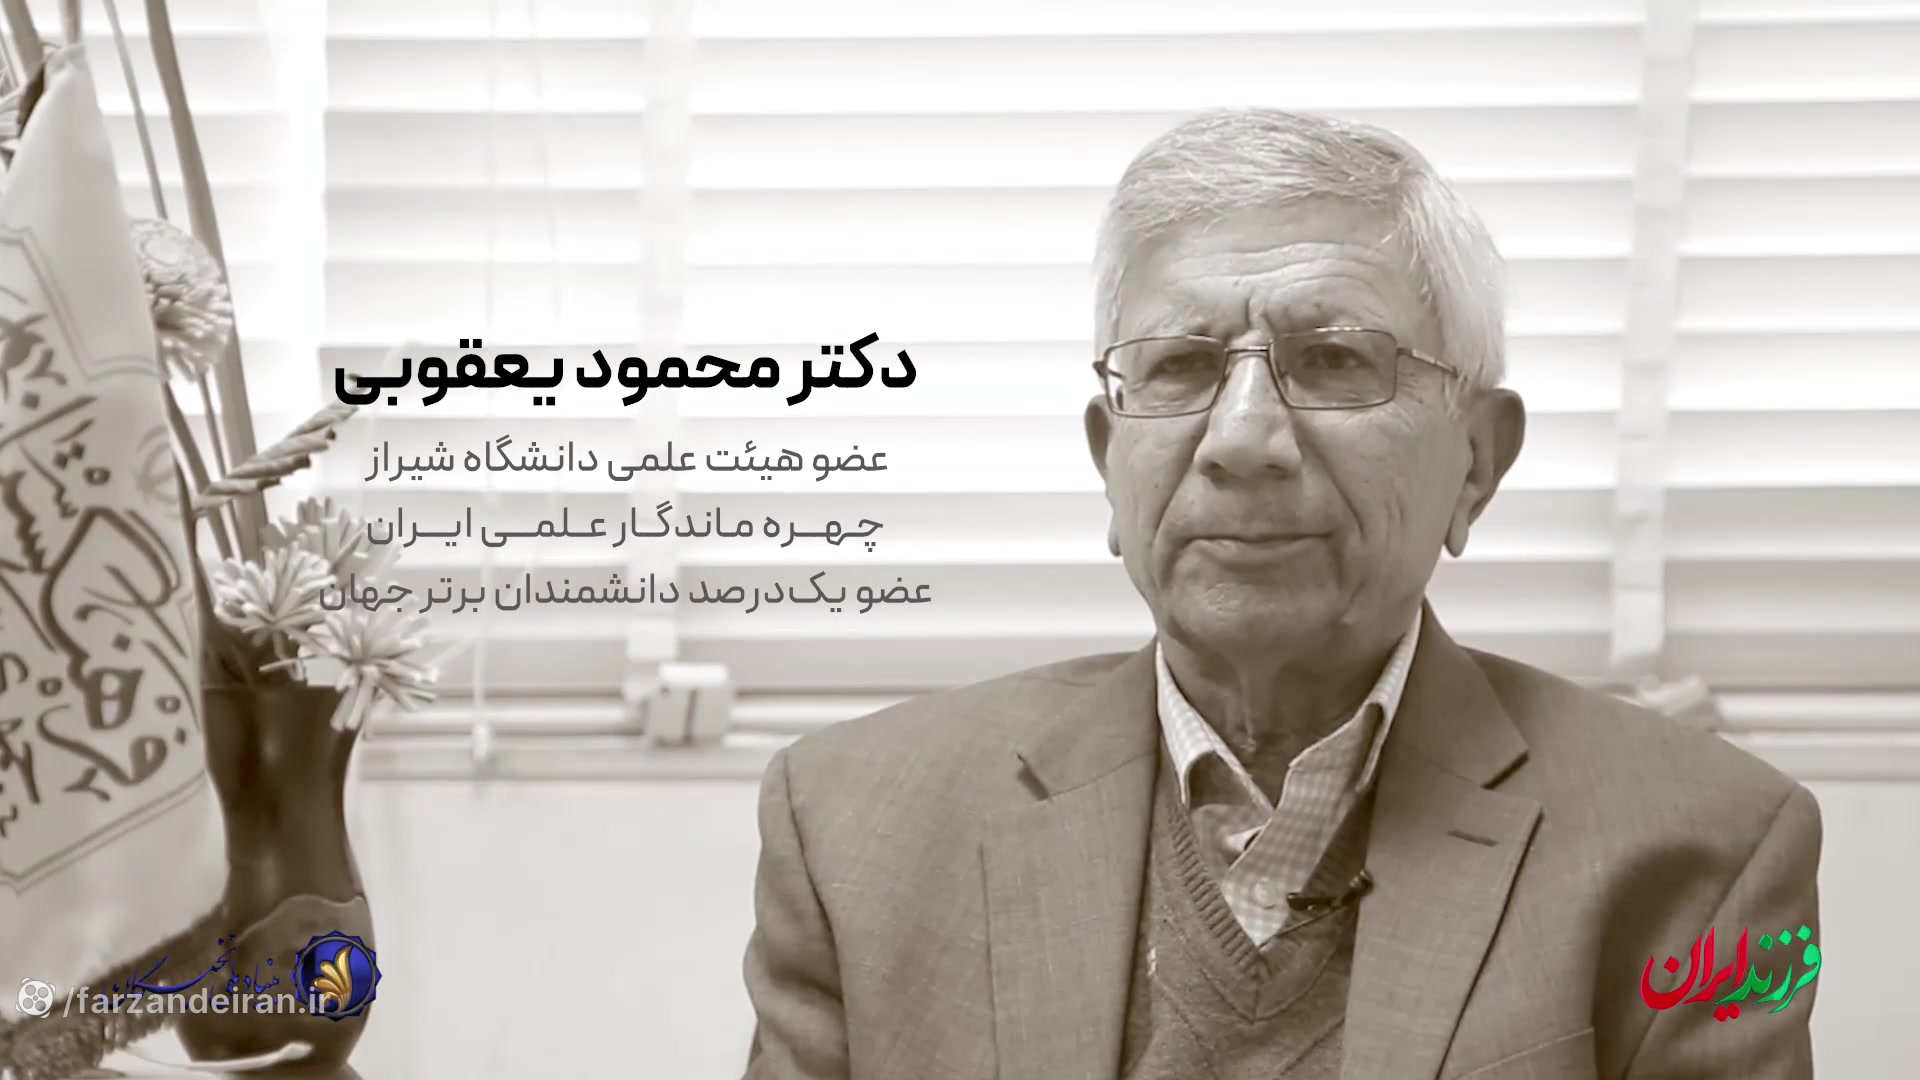 مستند زندگی دکتر محمود یعقوبی،استاد مکانیک دانشگاه شیراز